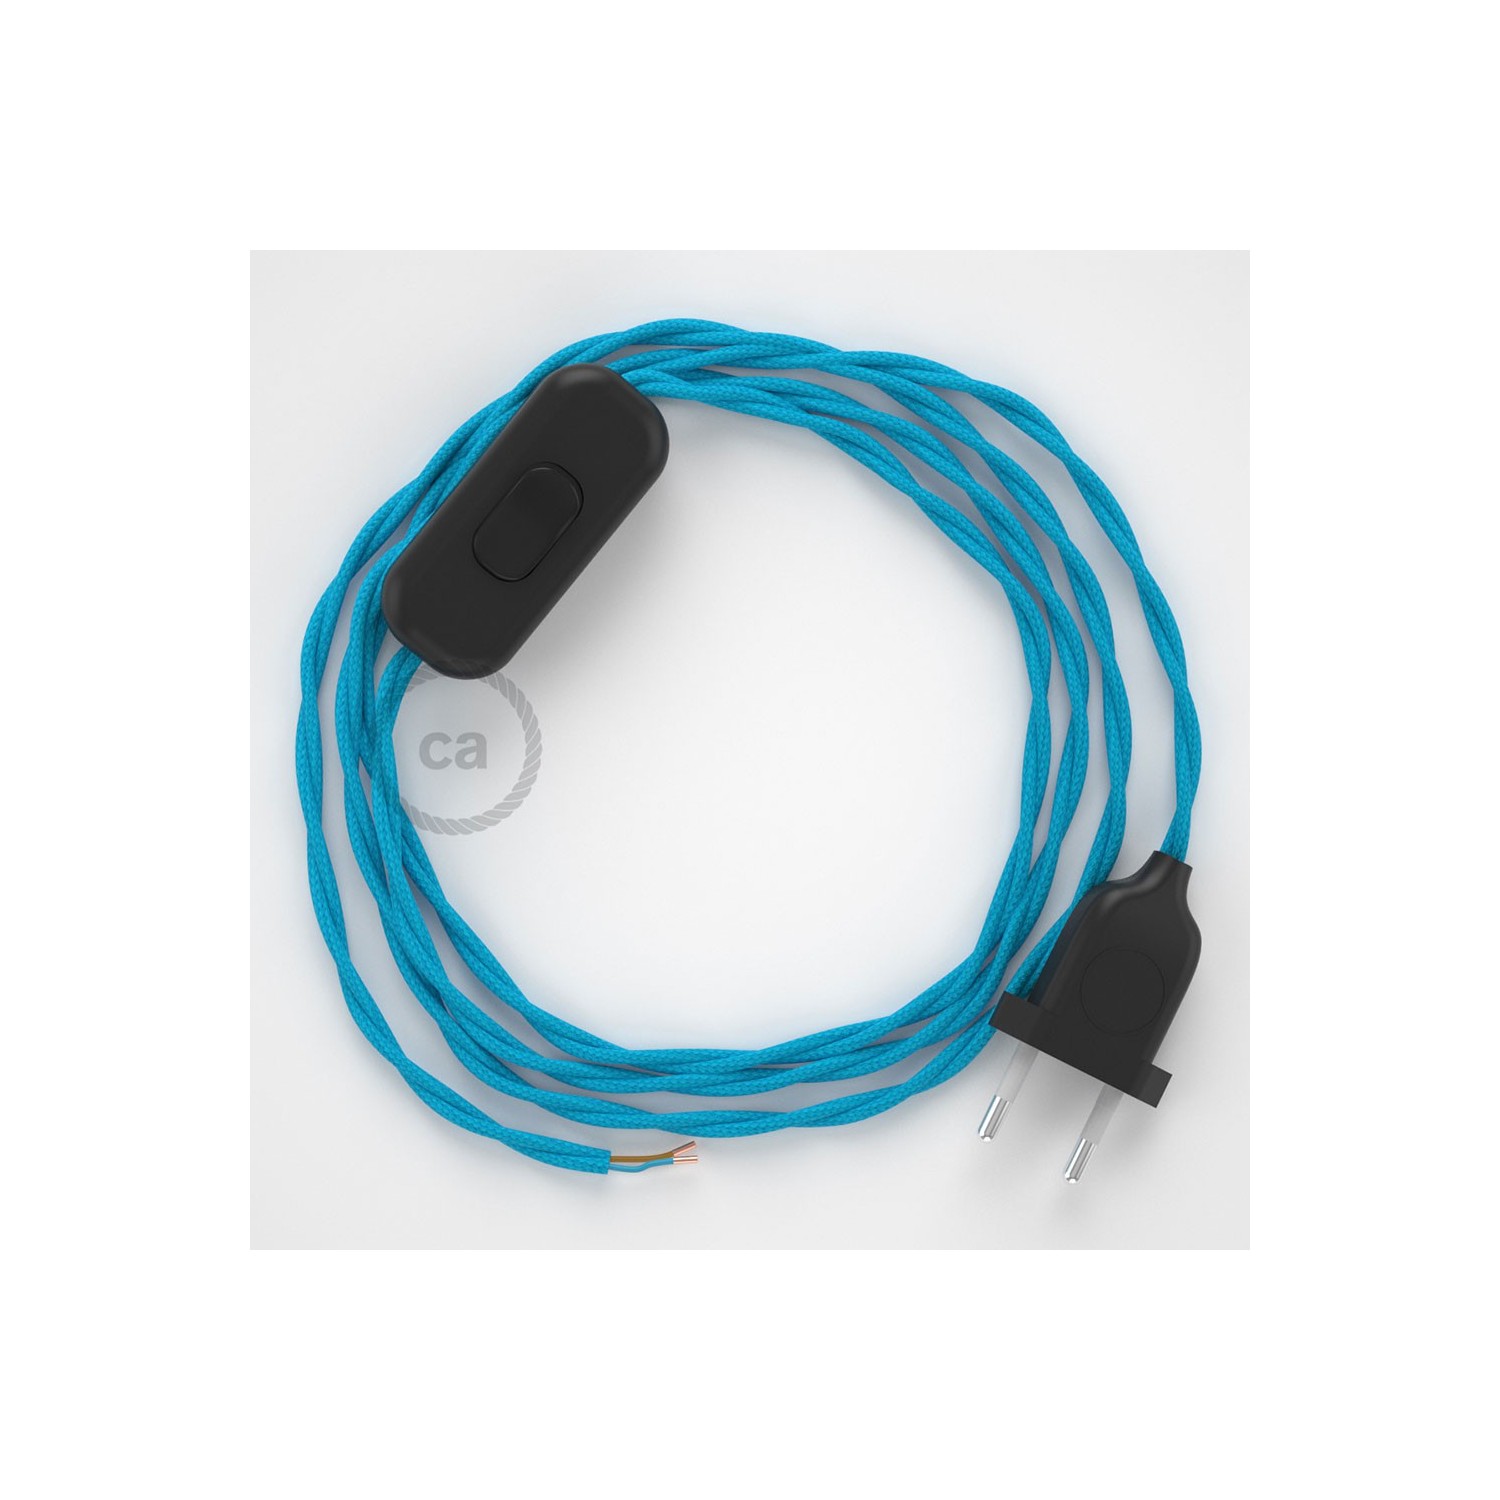 Cableado para lámpara, cable TM11 Efecto Seda Celeste 1,8m. Elige tu el color de la clavija y del interruptor!